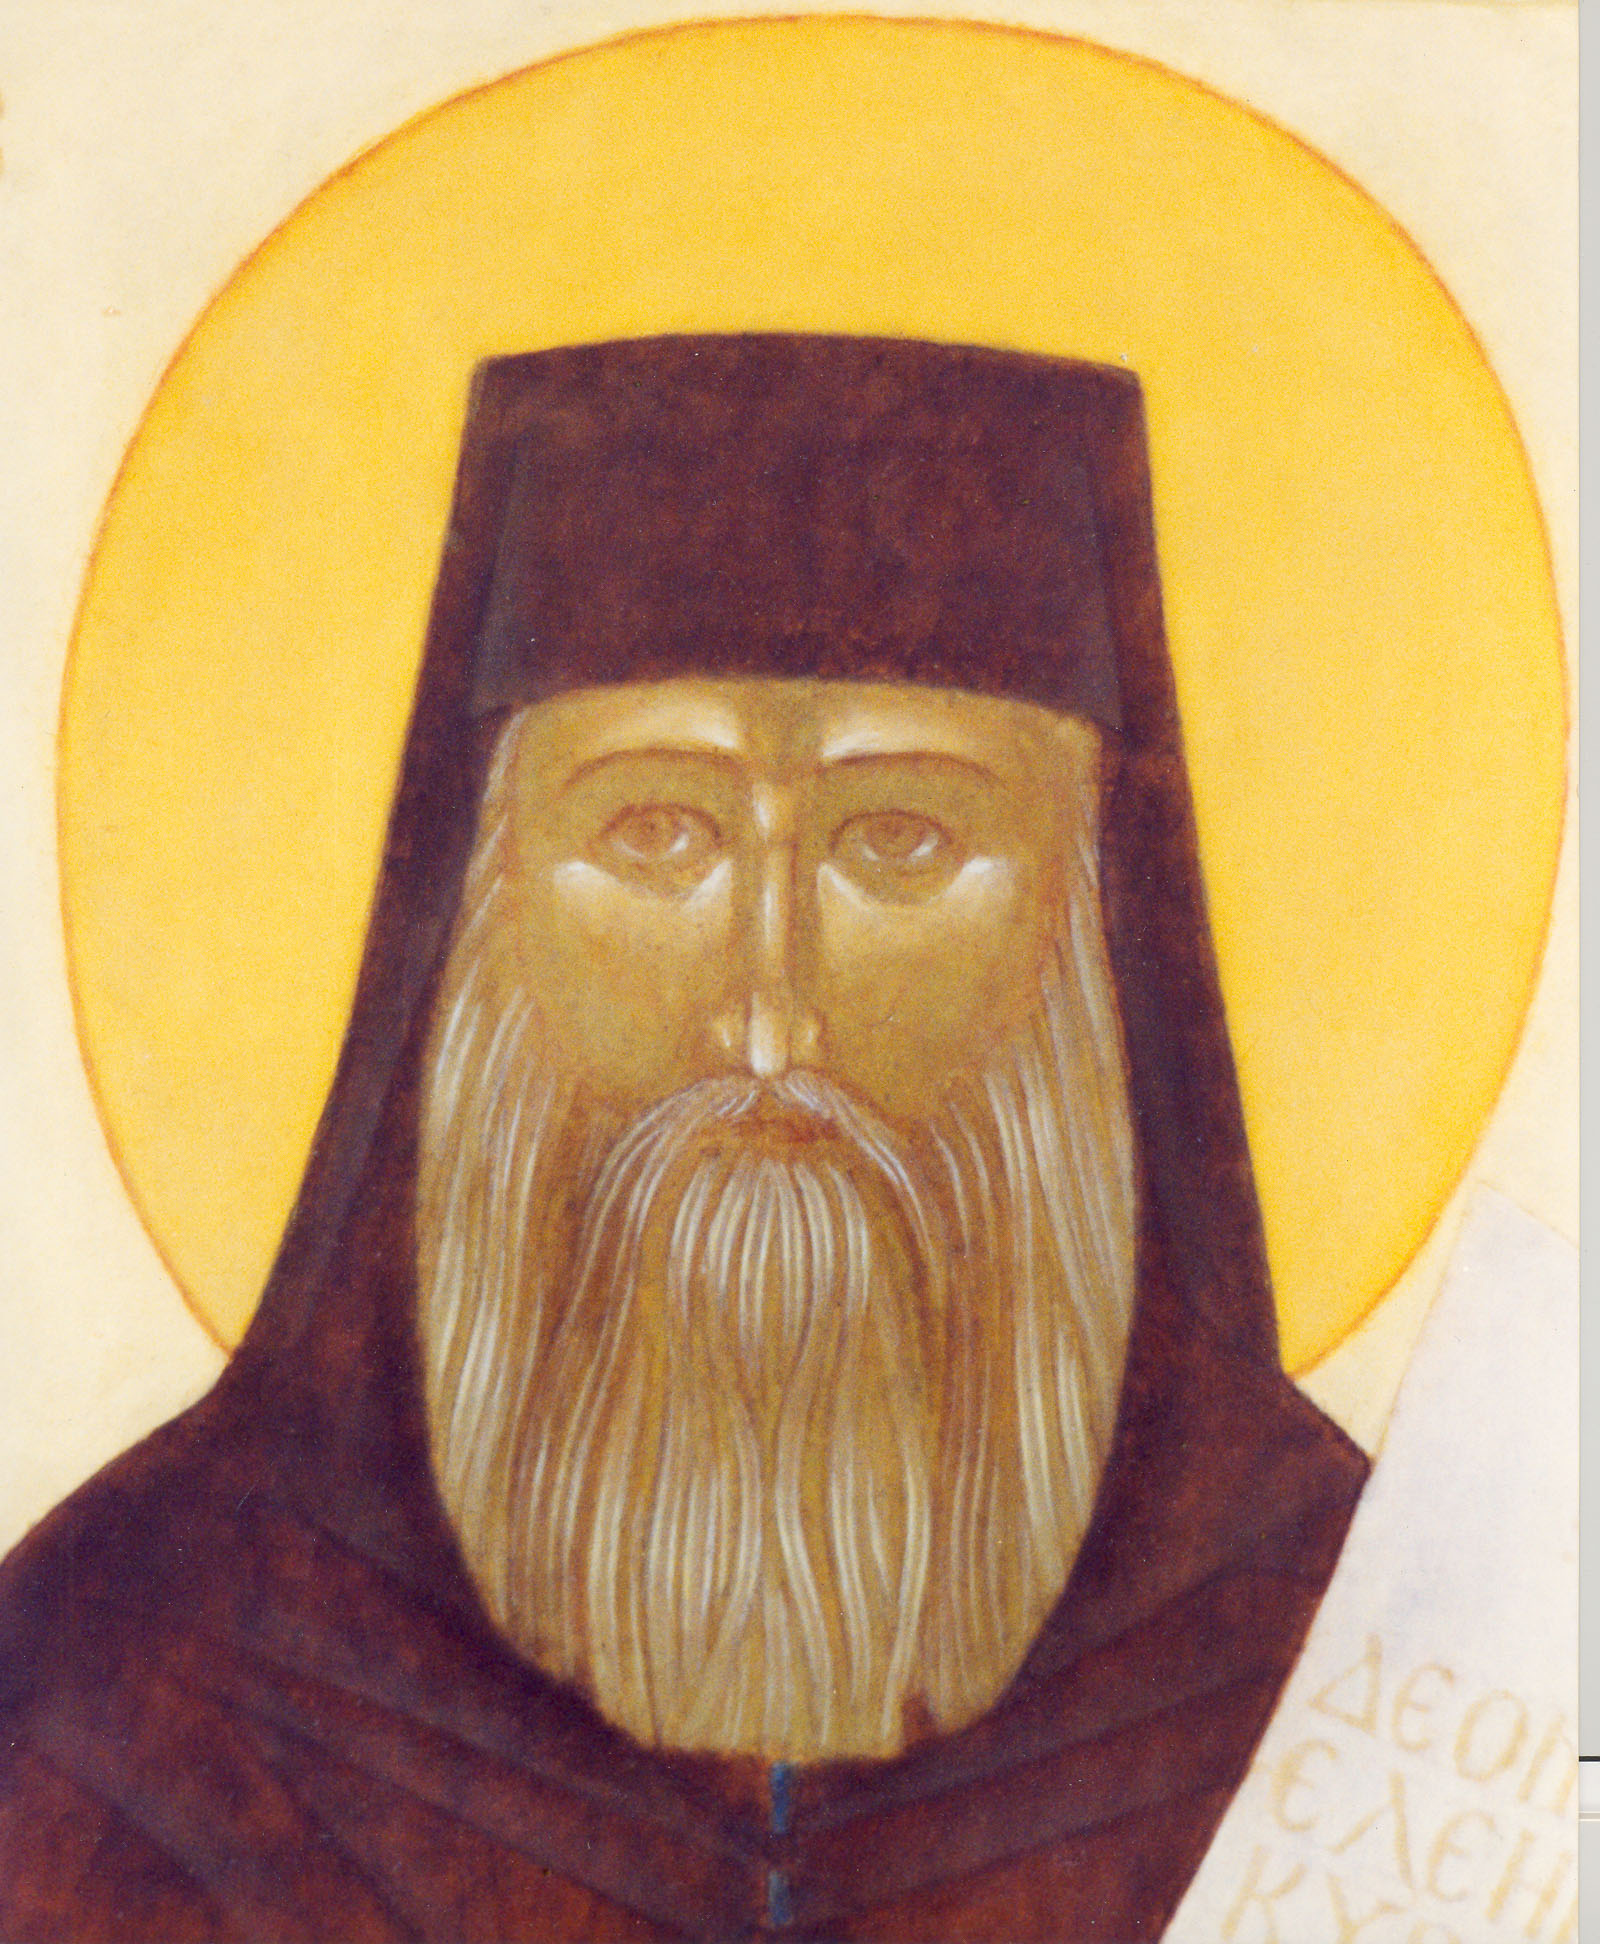 Religious icon: Saint Silouan